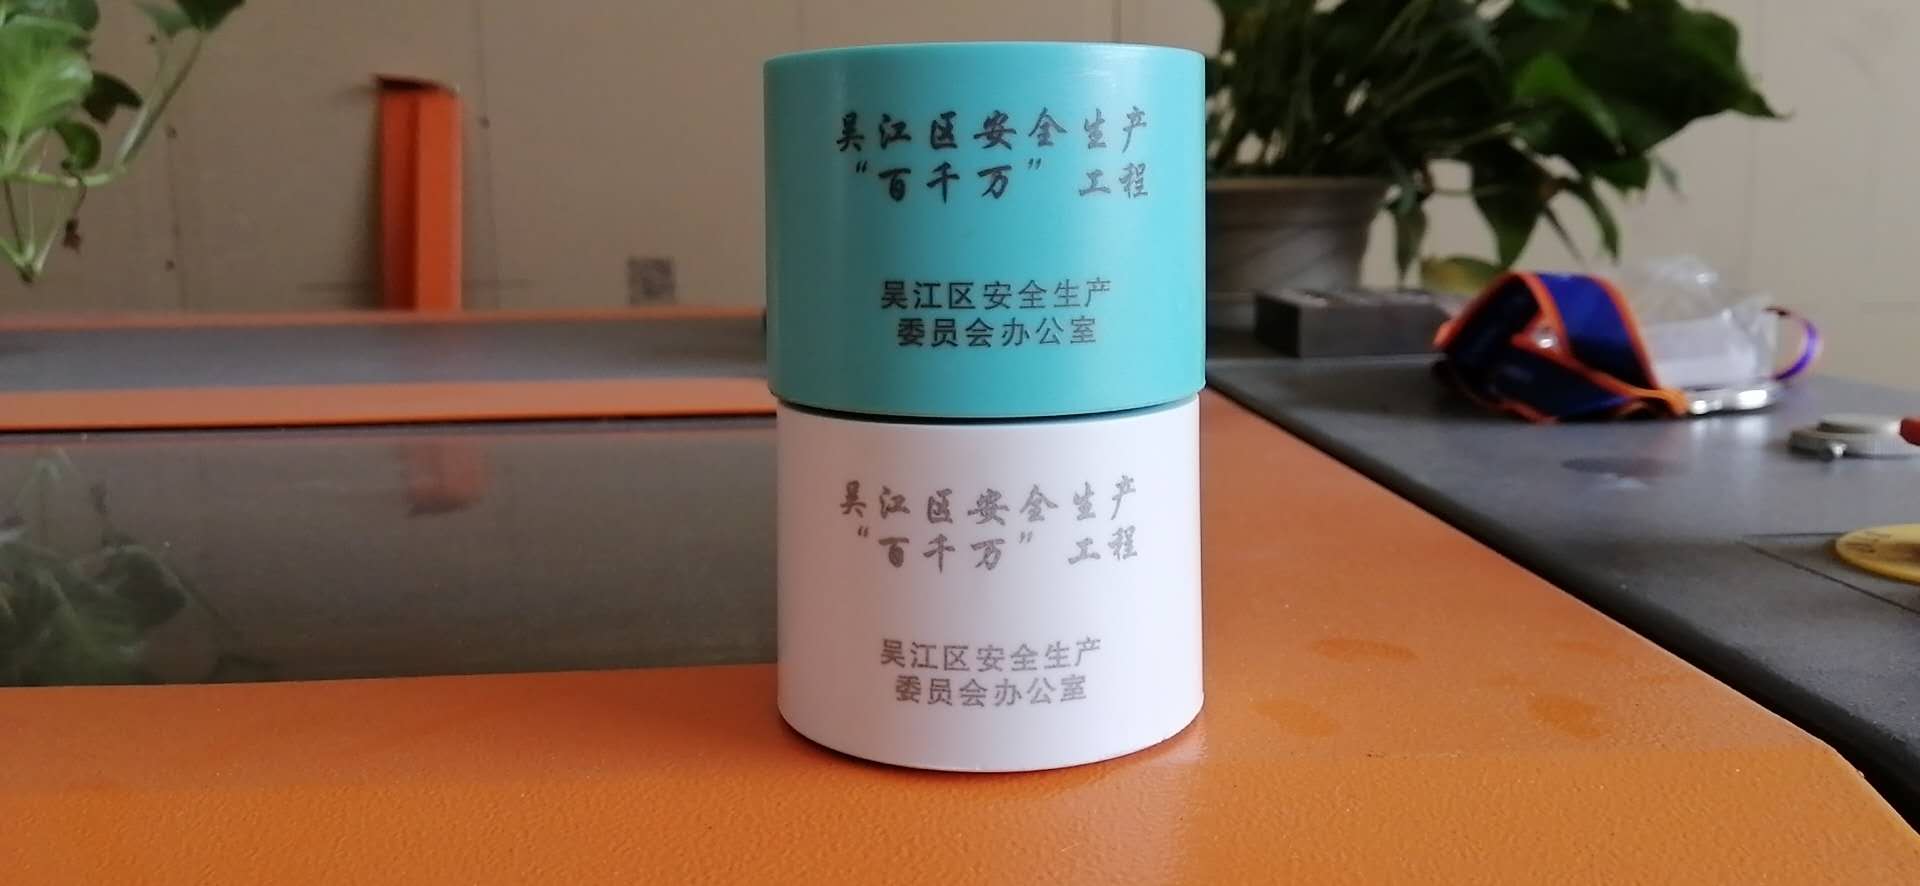 上海礼品激光刻字加工 打标加工